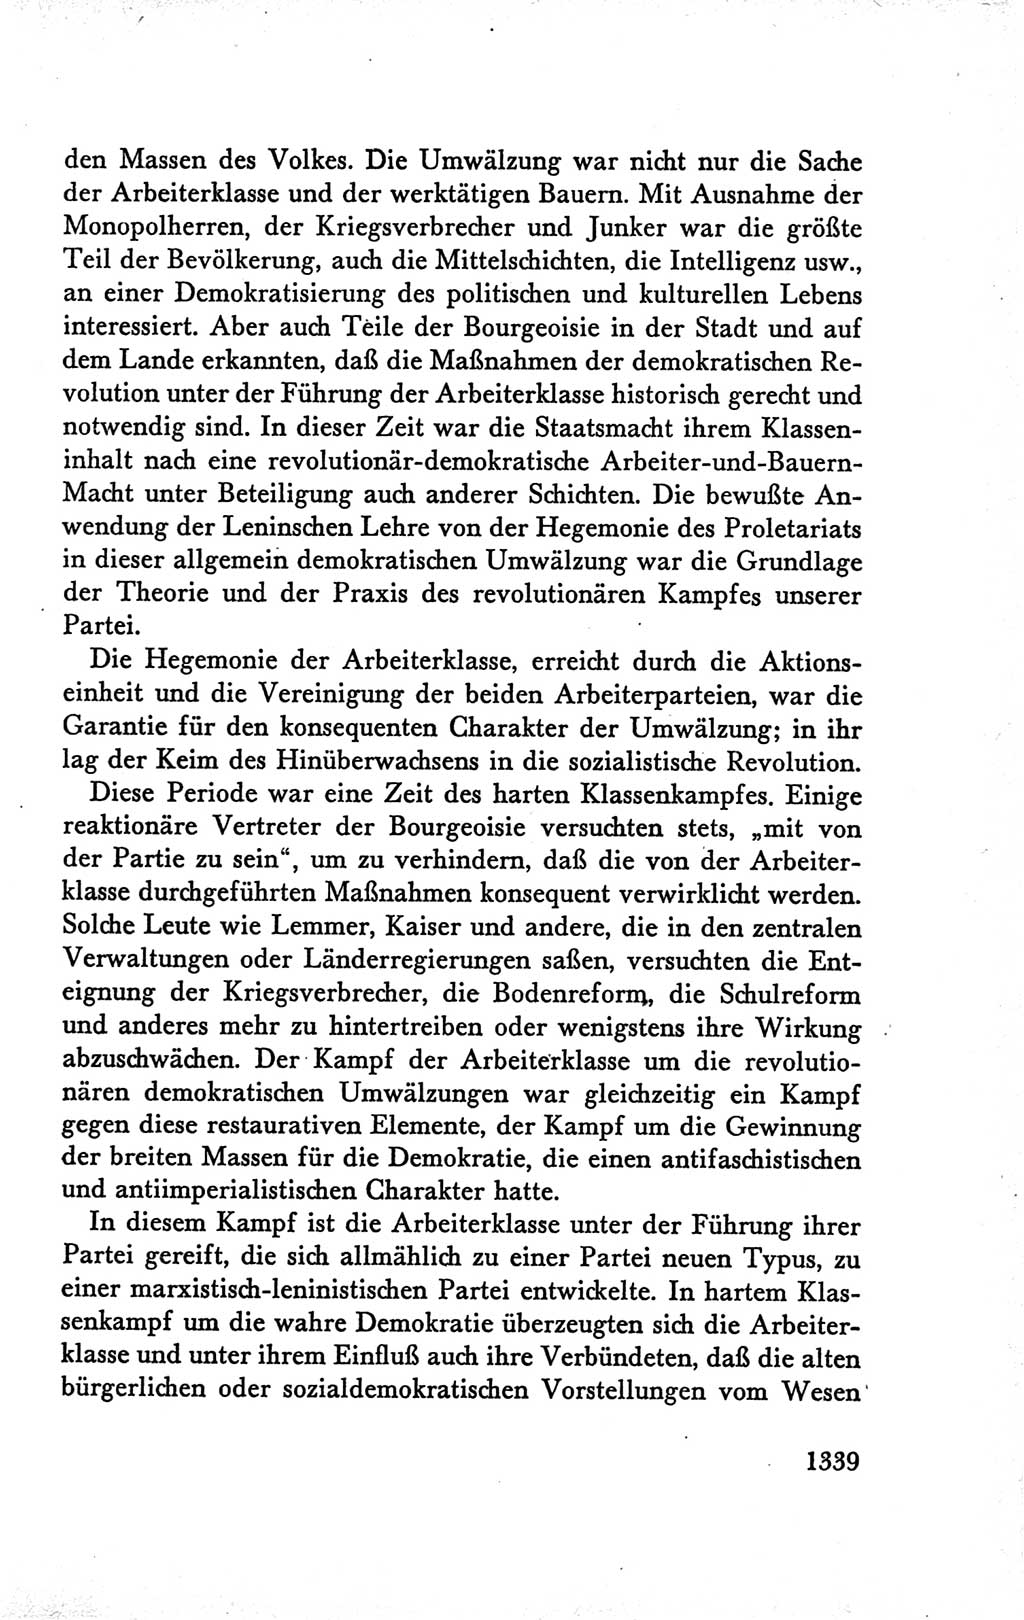 Protokoll der Verhandlungen des Ⅴ. Parteitages der Sozialistischen Einheitspartei Deutschlands (SED) [Deutsche Demokratische Republik (DDR)] 1958, Seite 1339